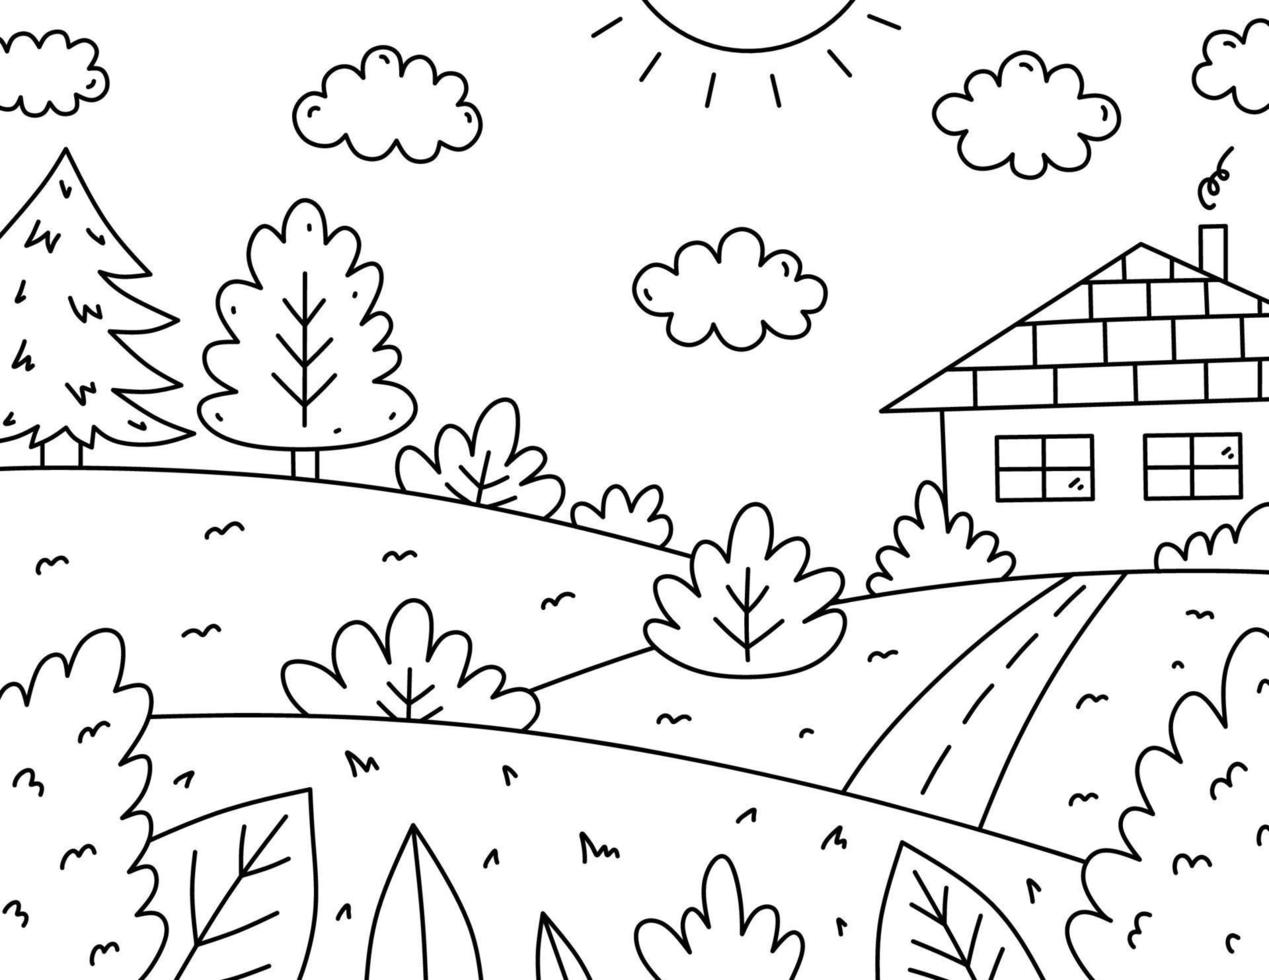 söt barn färg sida. landskap med hus, träd, buskar, fält och väg. vektor ritad för hand illustration i klotter stil. tecknad serie färg bok för barn.